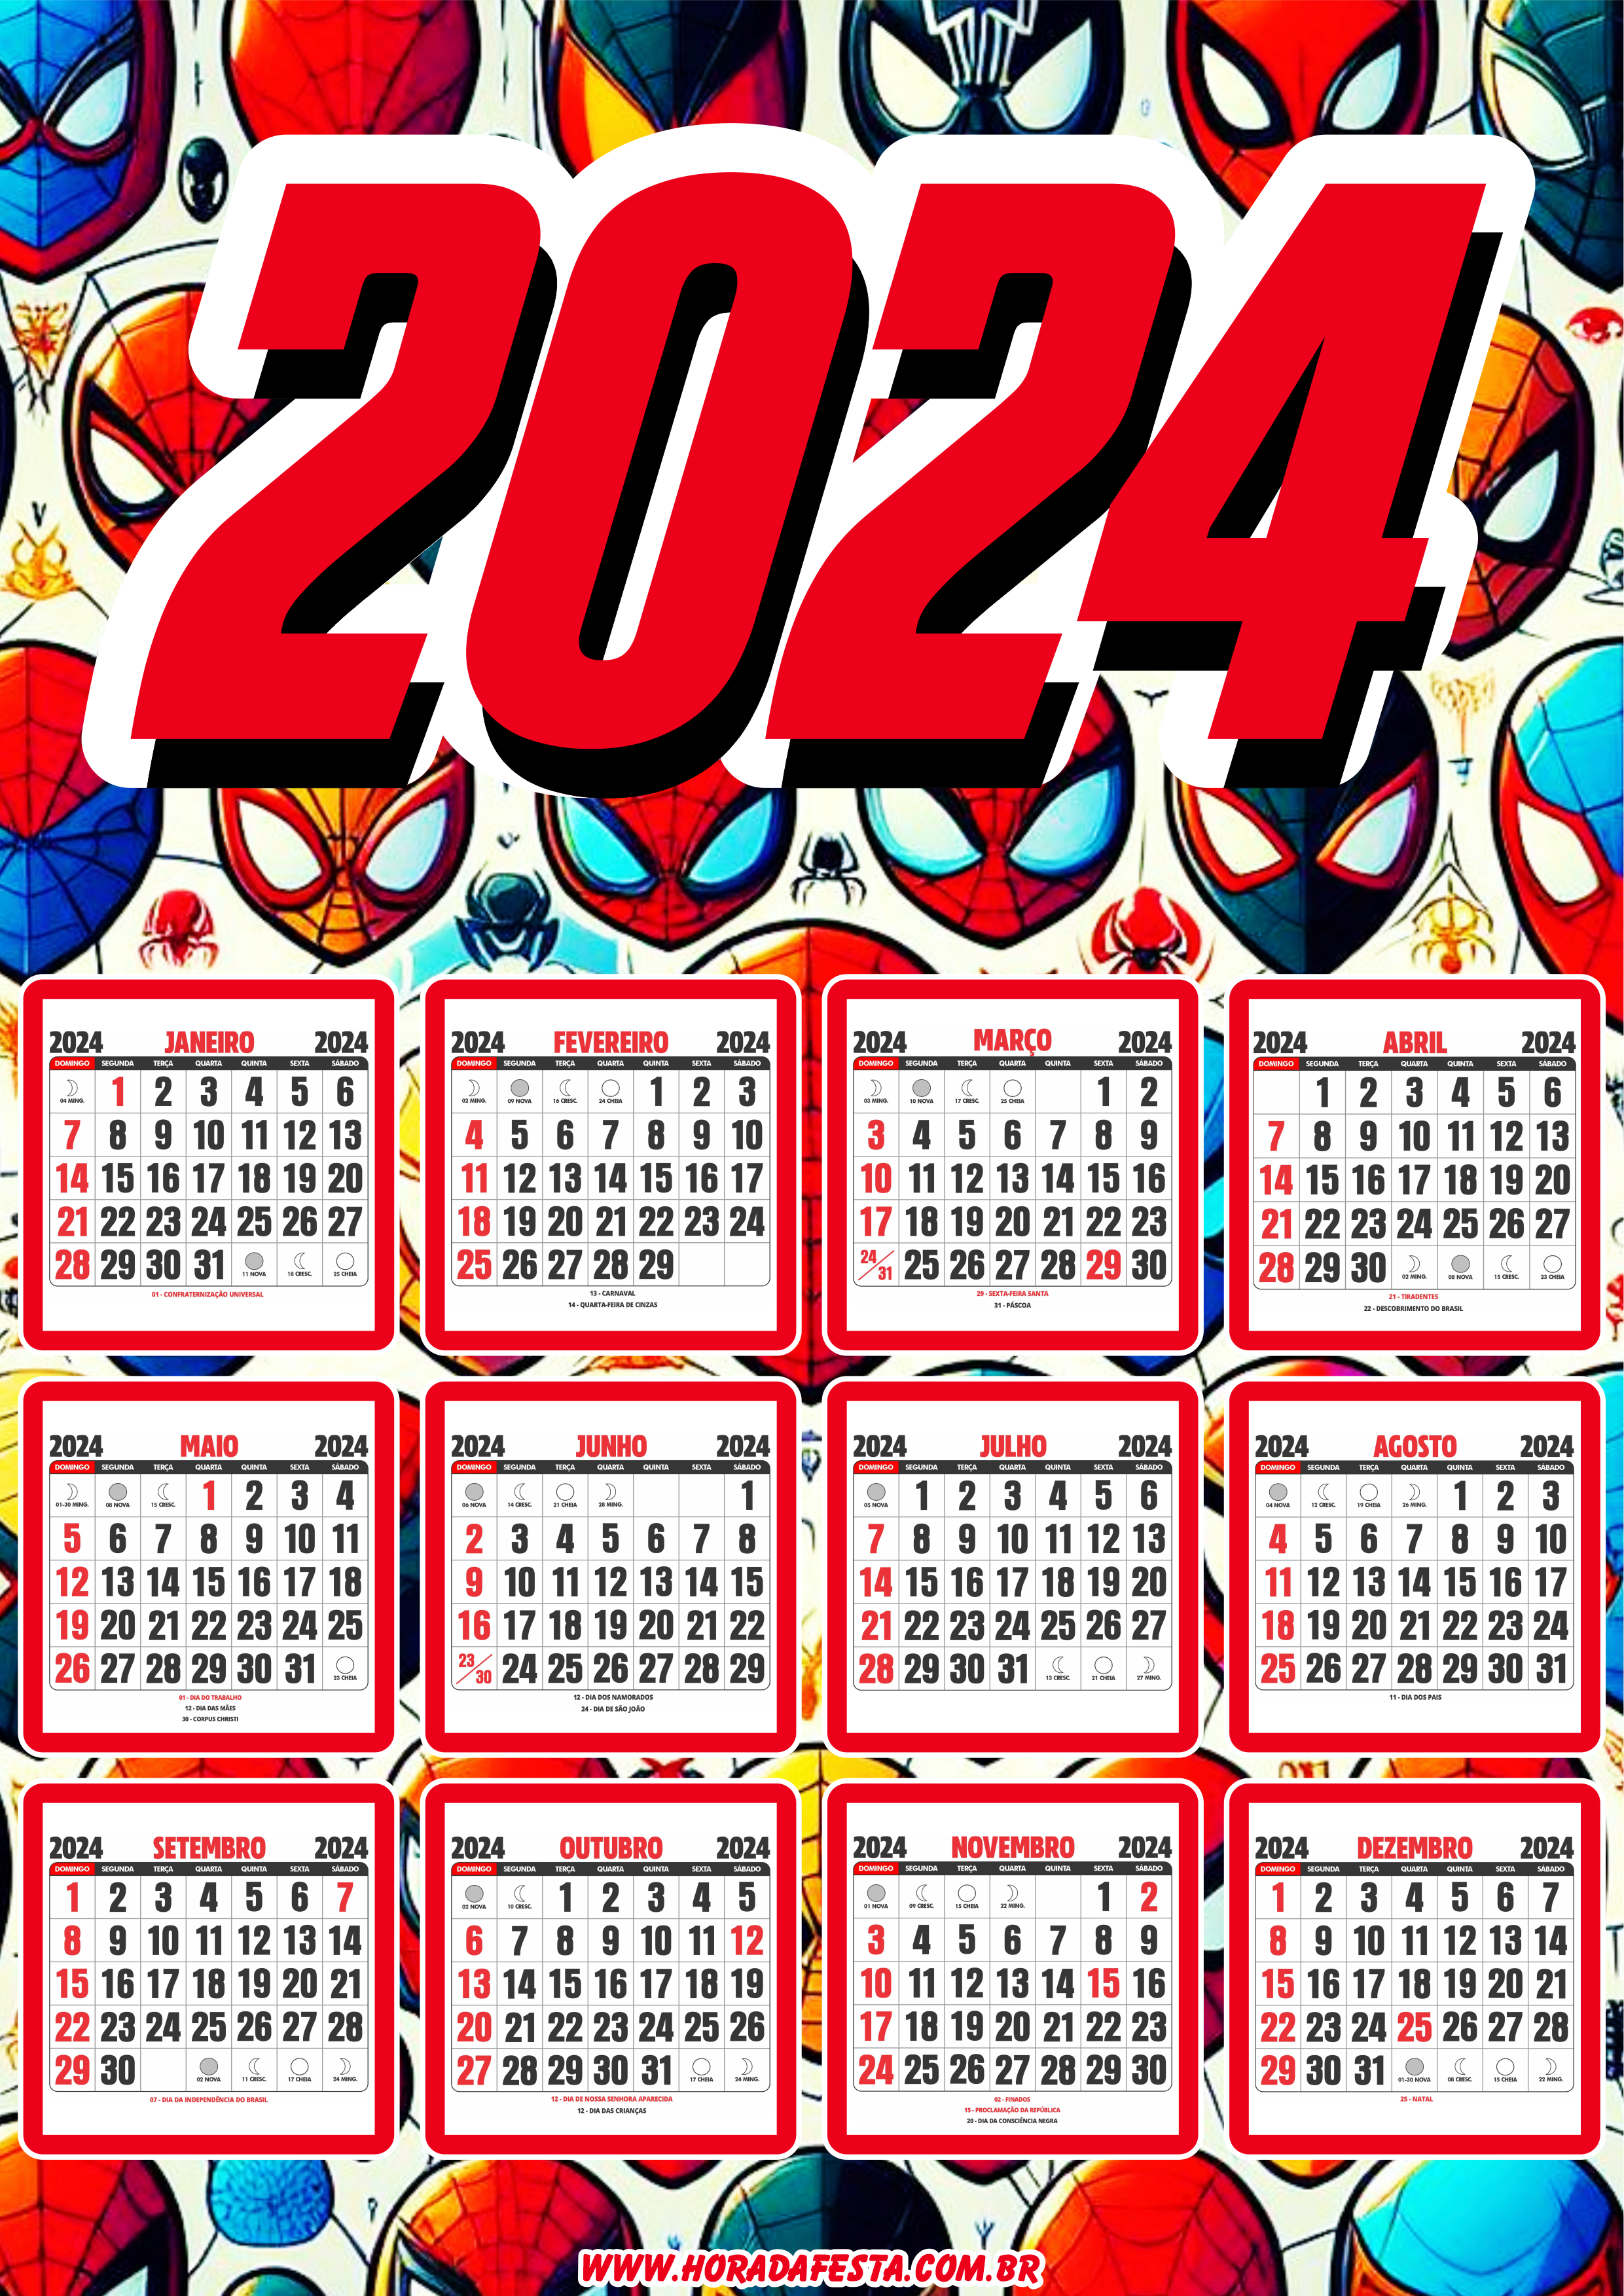 Calendário 2024 personalizado homem aranha spider man artigos de papelaria para festa infantil png